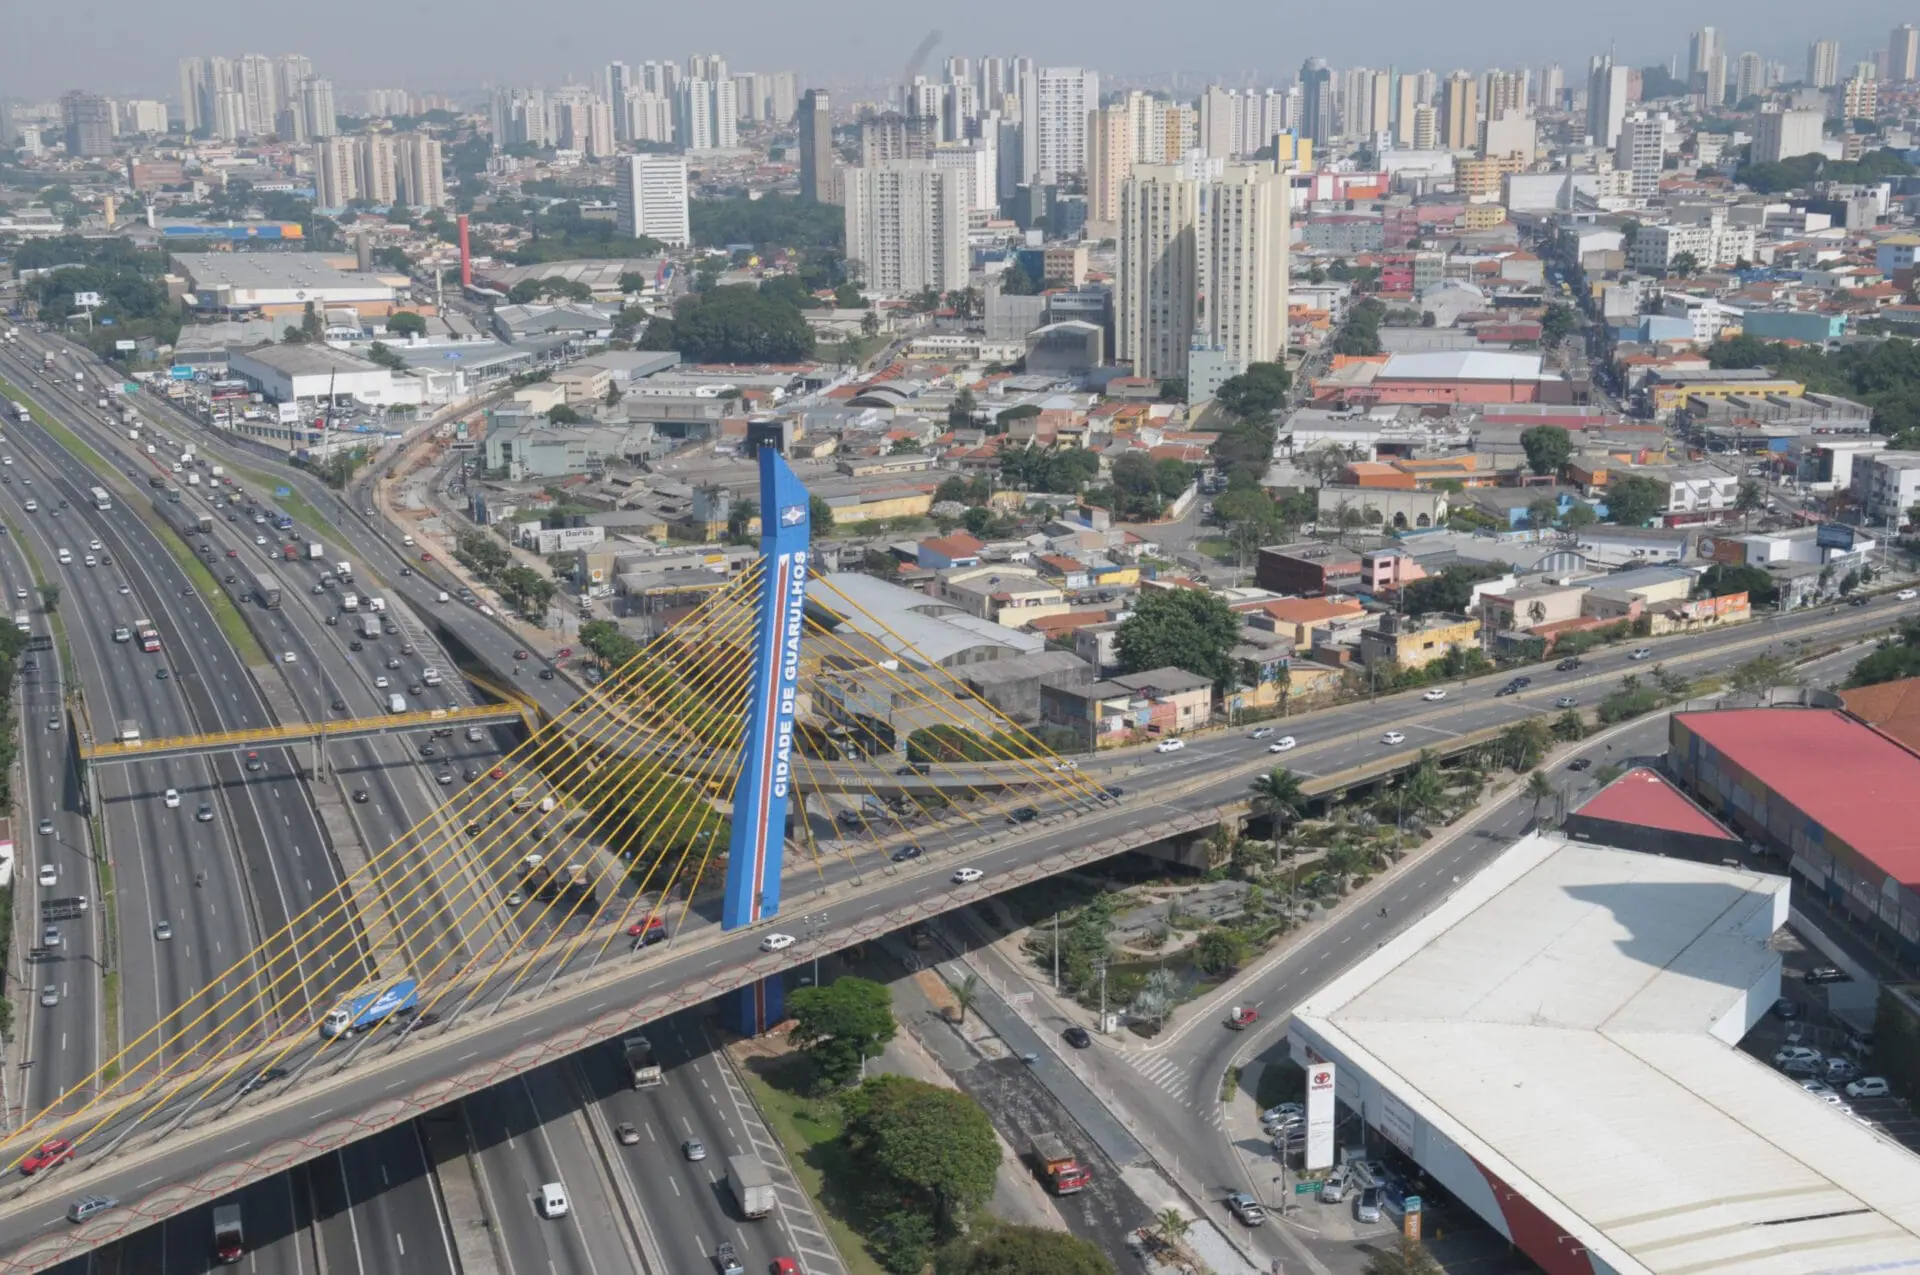 Vista aérea do Viaduto Cidade de Guarulhos - Professor Antônio Veronezi, cartão-postal do município